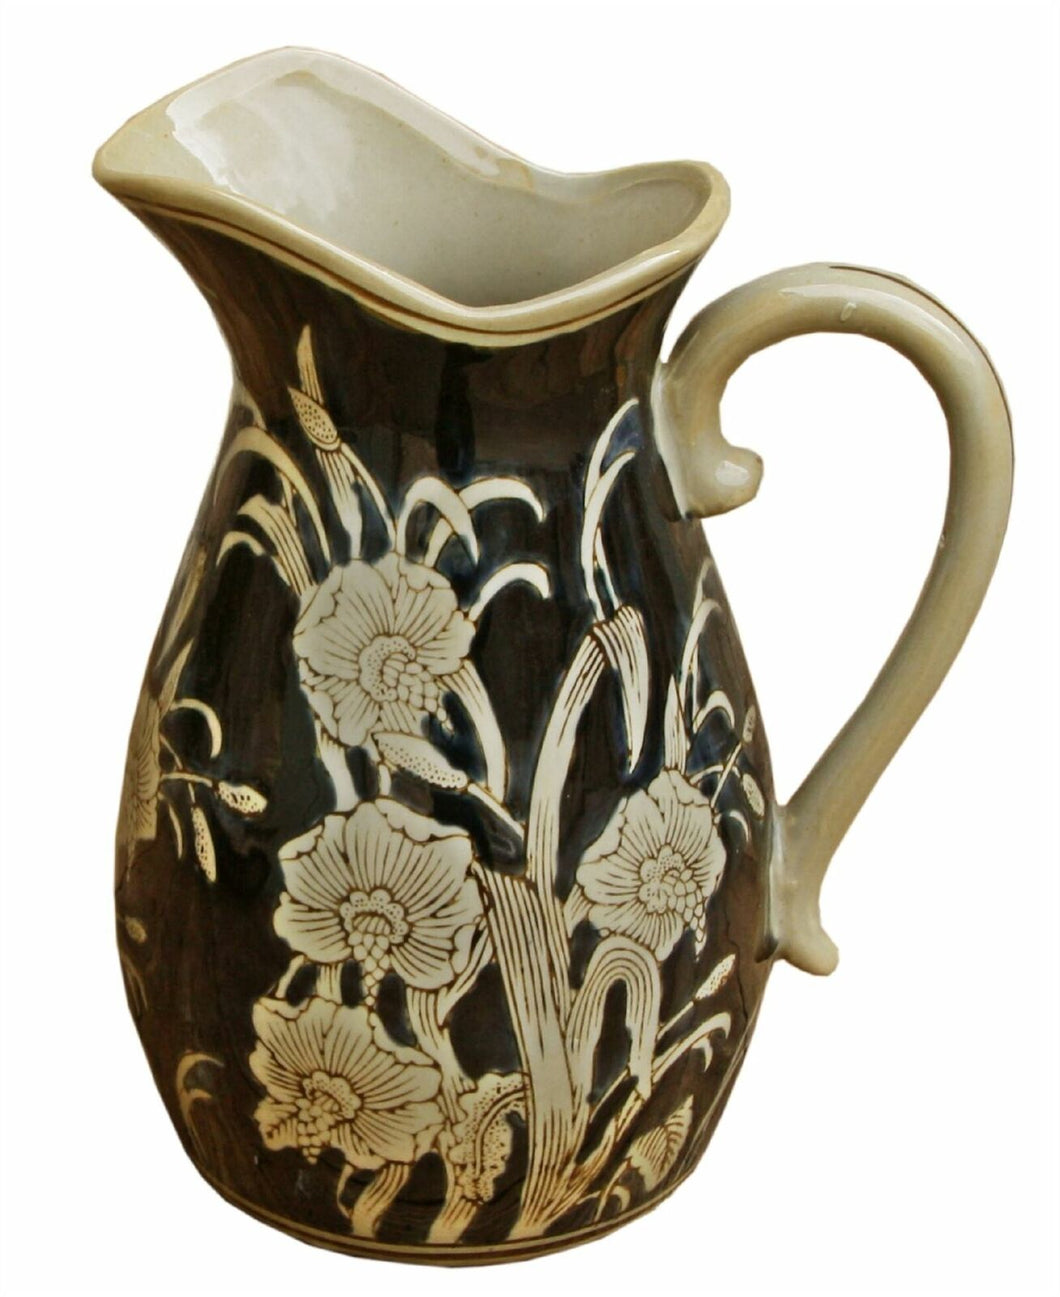 Ceramic embossed jug style vase regal design